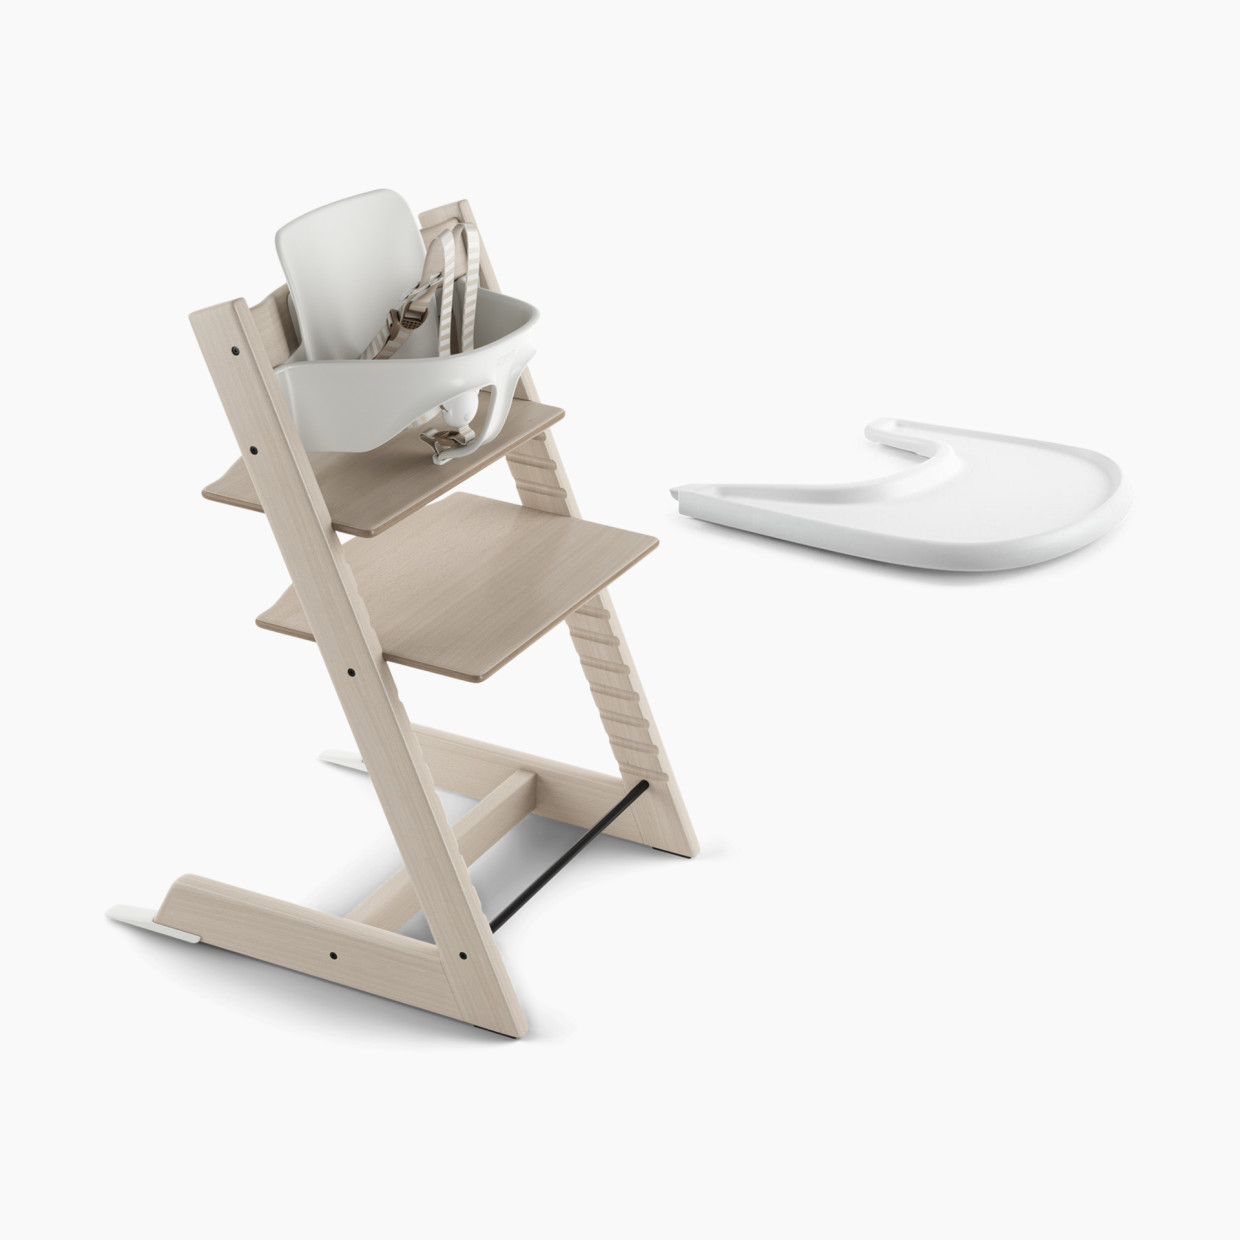 Stokke Tripp Trapp High Chair + Tray Bundle - Whitewash/White.